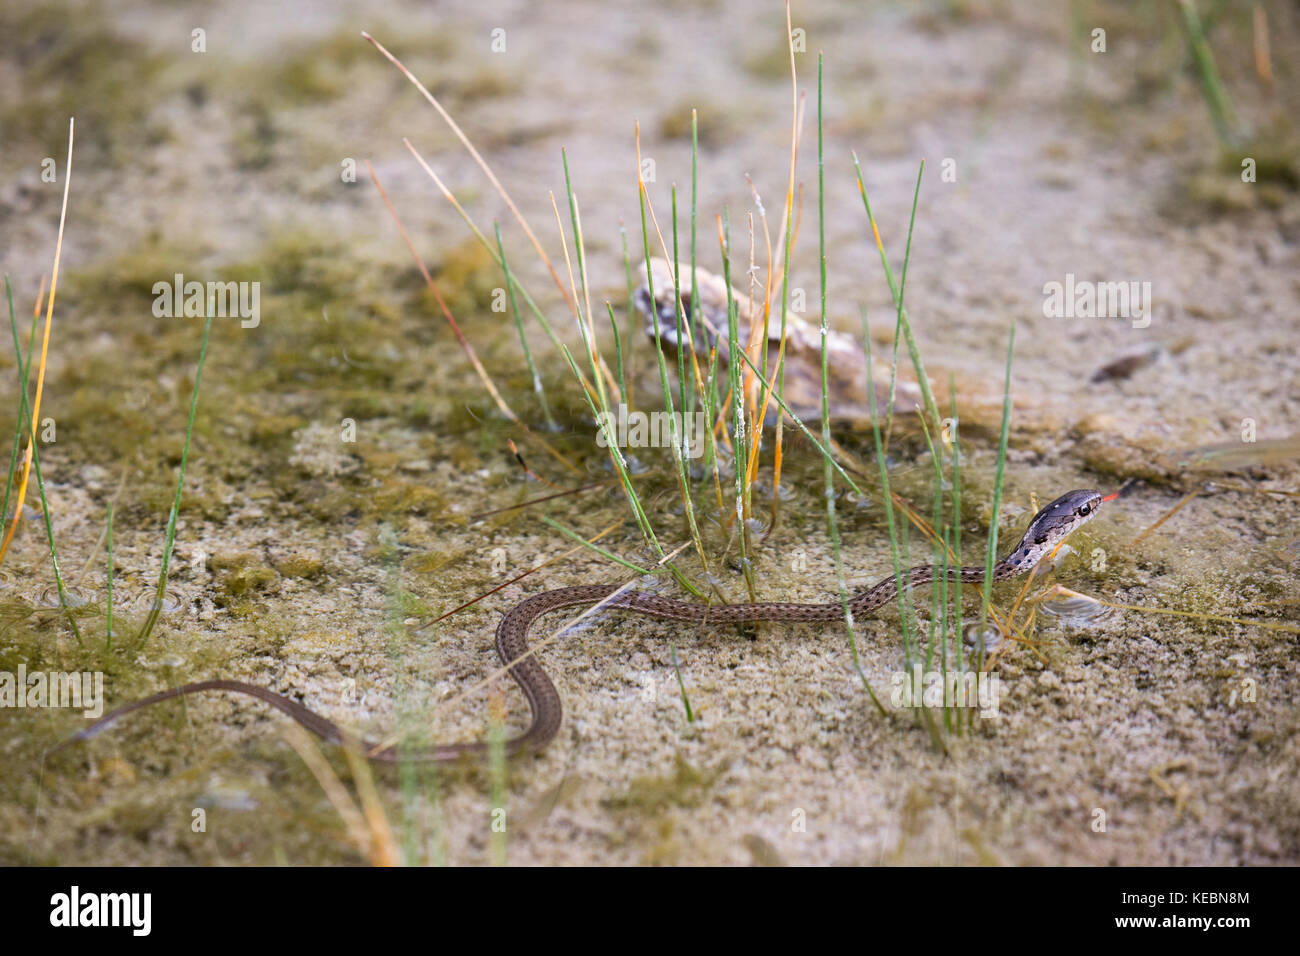 Serpent-jarretière terrestre de l'Ouest (Thamnophis elegans) nageant dans une source chaude naturelle sur le mont Sulphur, dans le parc national Banff Banque D'Images